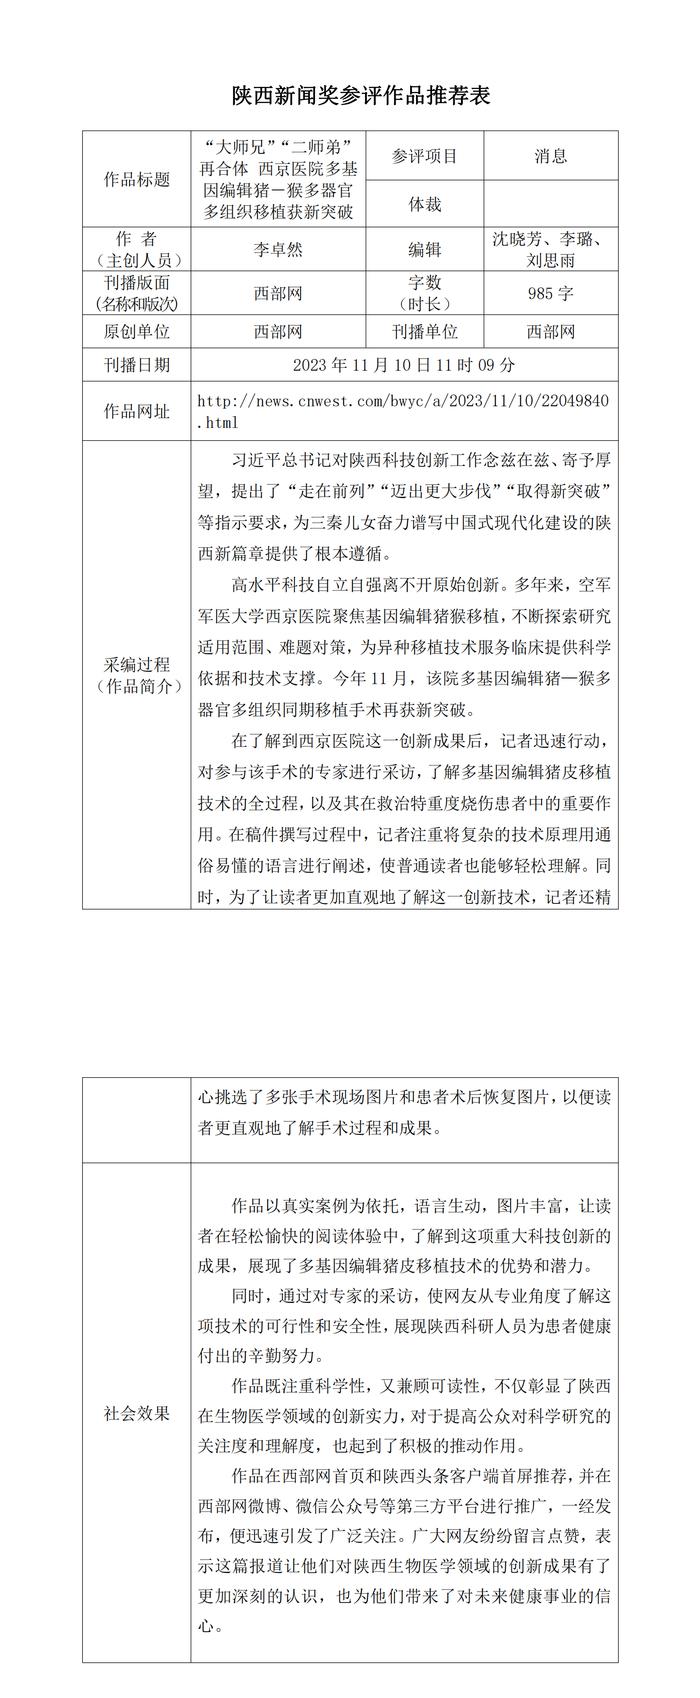 西部网关于申报2023年度陕西新闻奖作品的公示